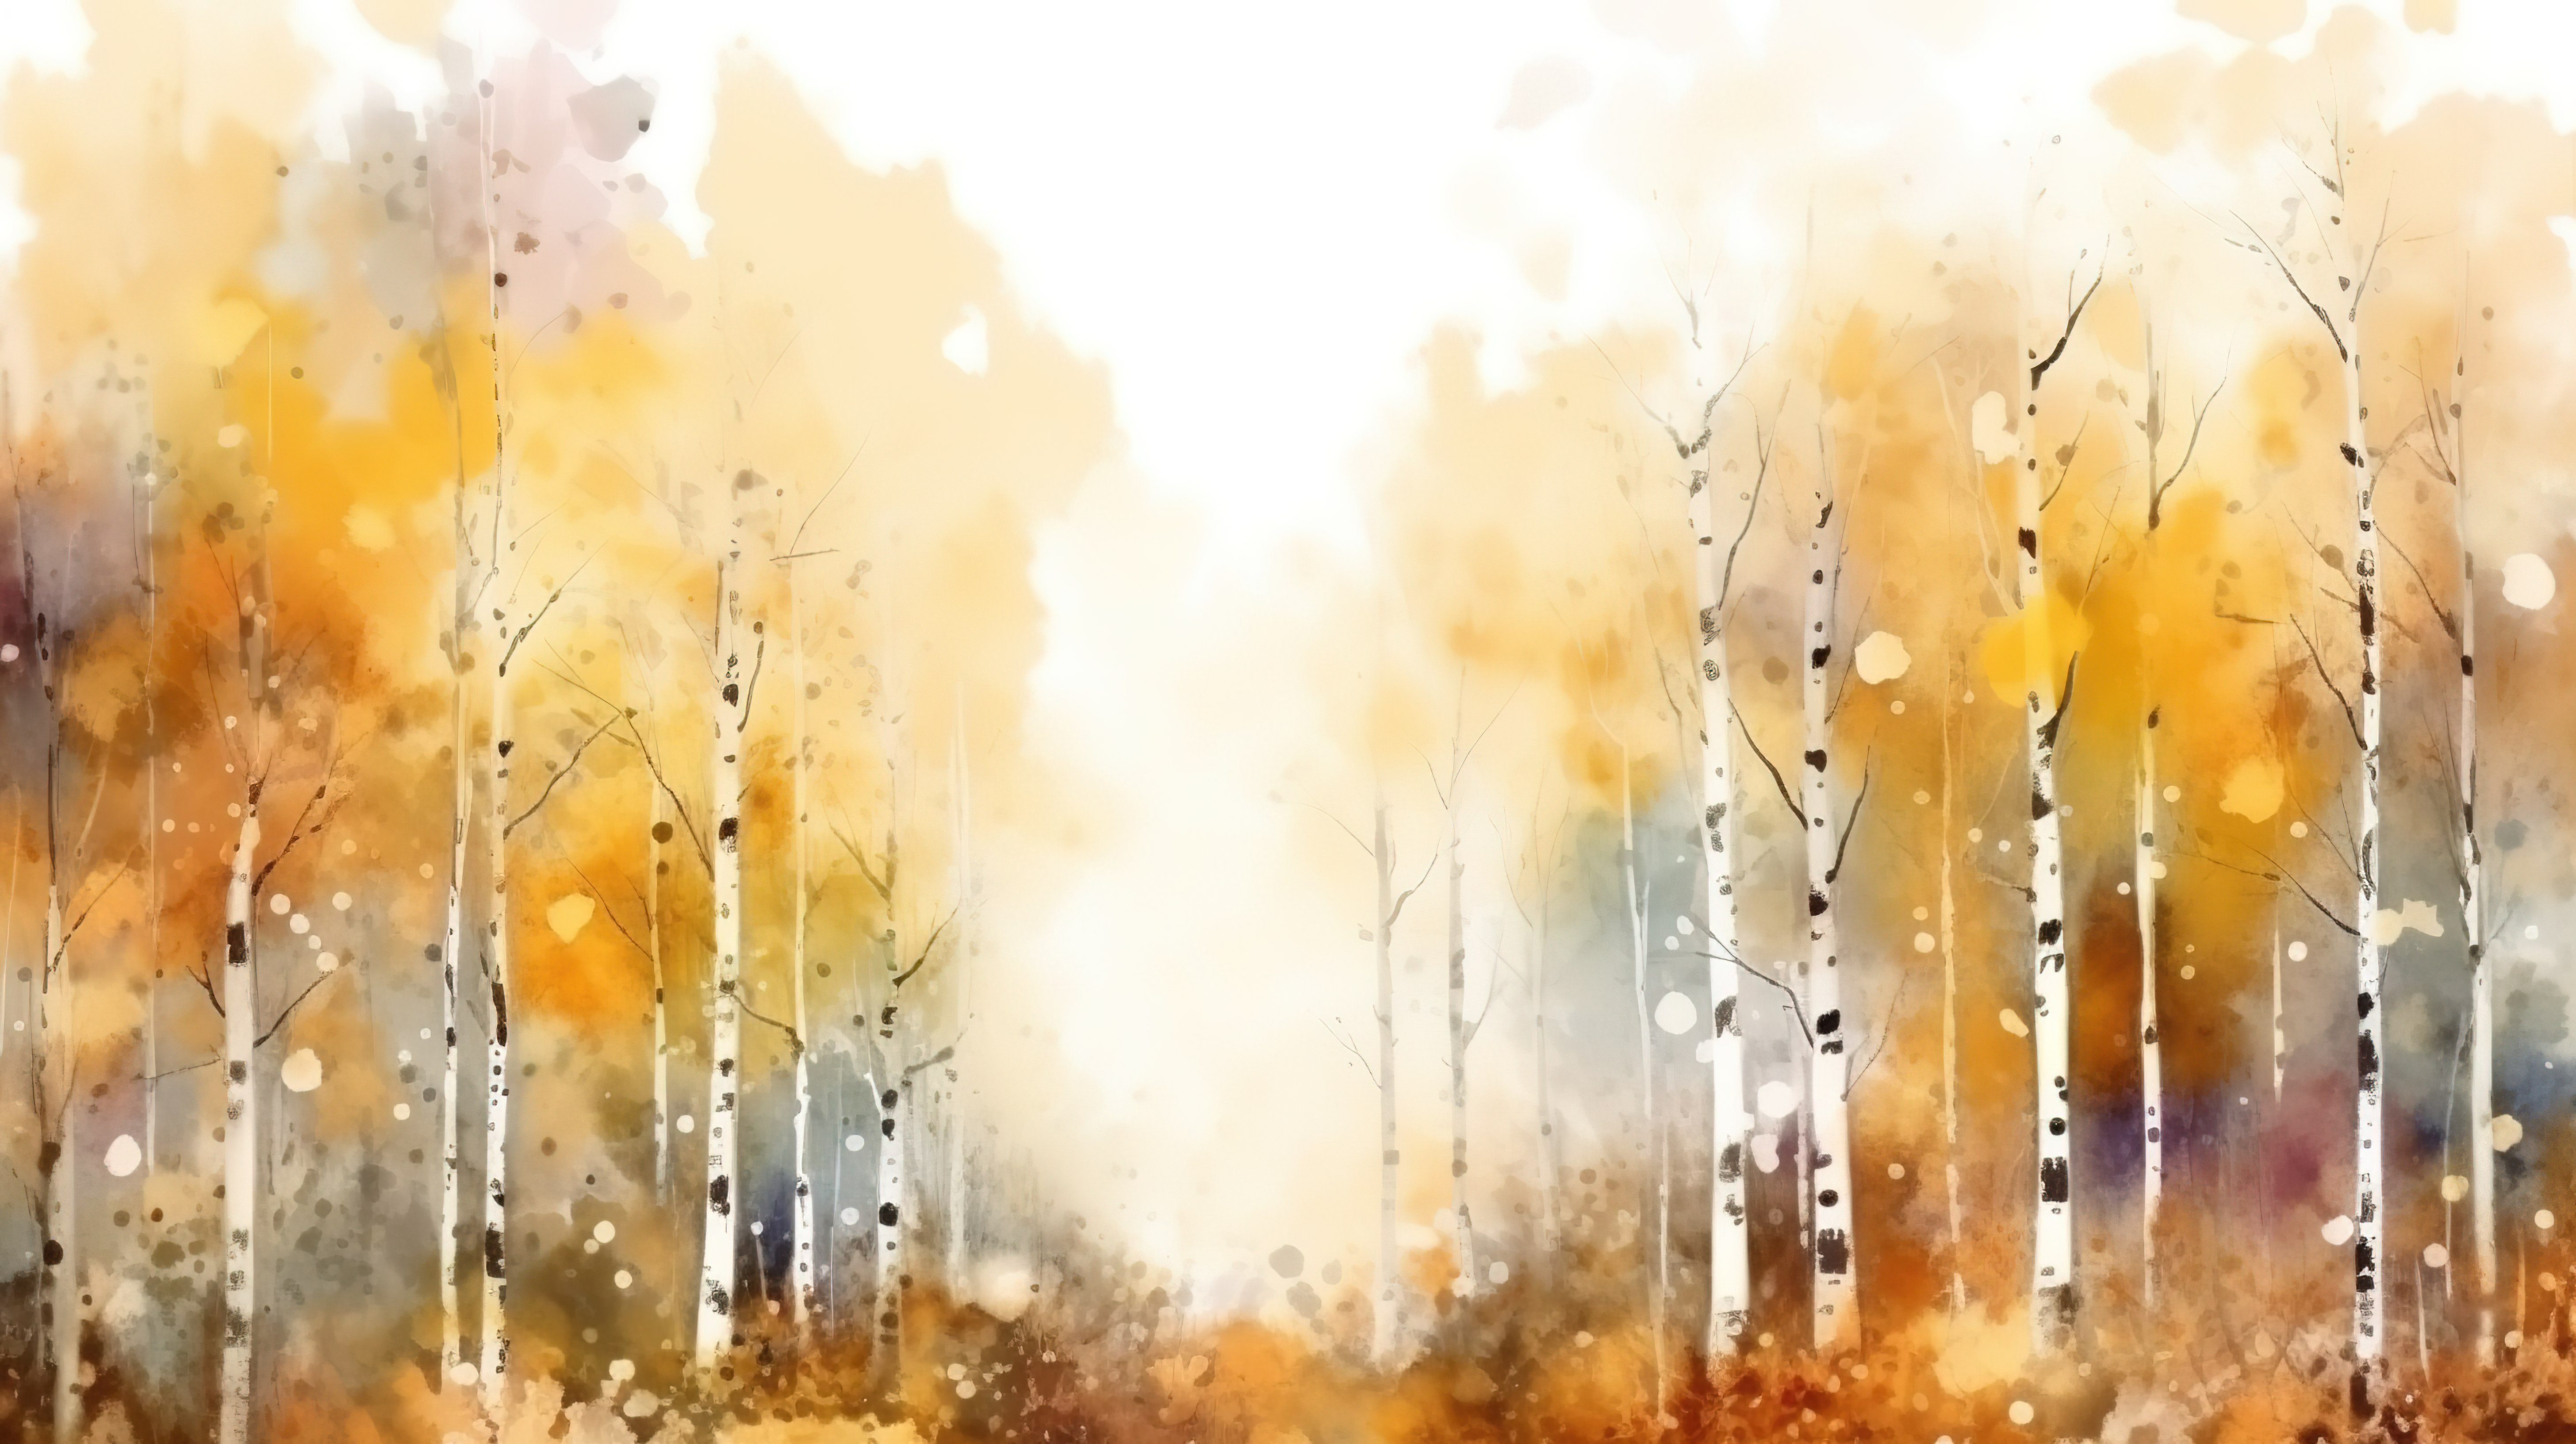 以桦树和白杨树为特色的 3D 抽象森林插图中充满活力的秋天色彩图片